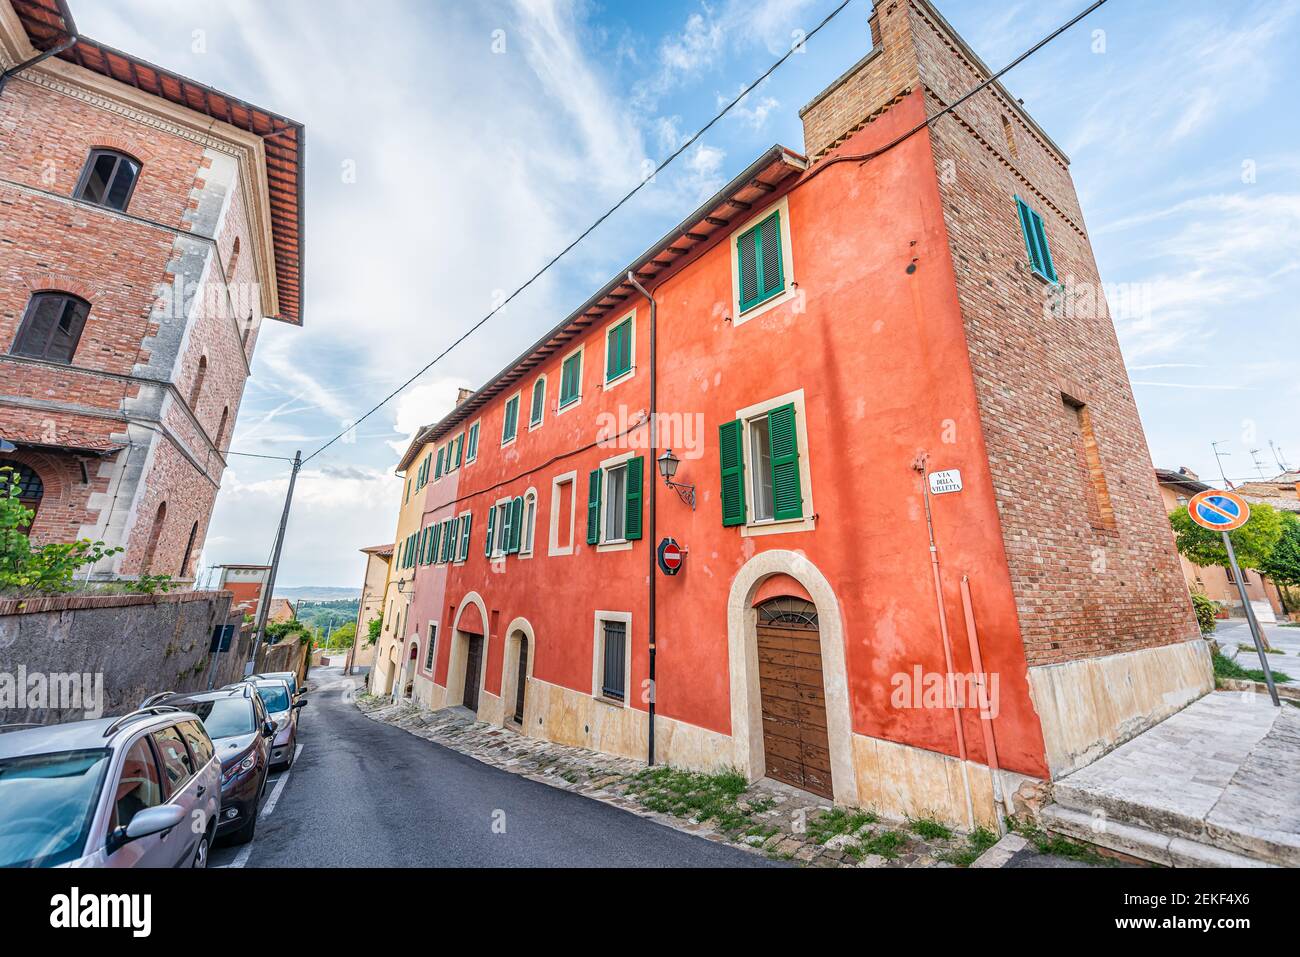 Chiusi, Italien kleine historische Stadt Dorf Stadt in der Toskana mit bunten roten Haus Gebäude im Sommer und Zeichen für die Via della villetta und niemand Stockfoto